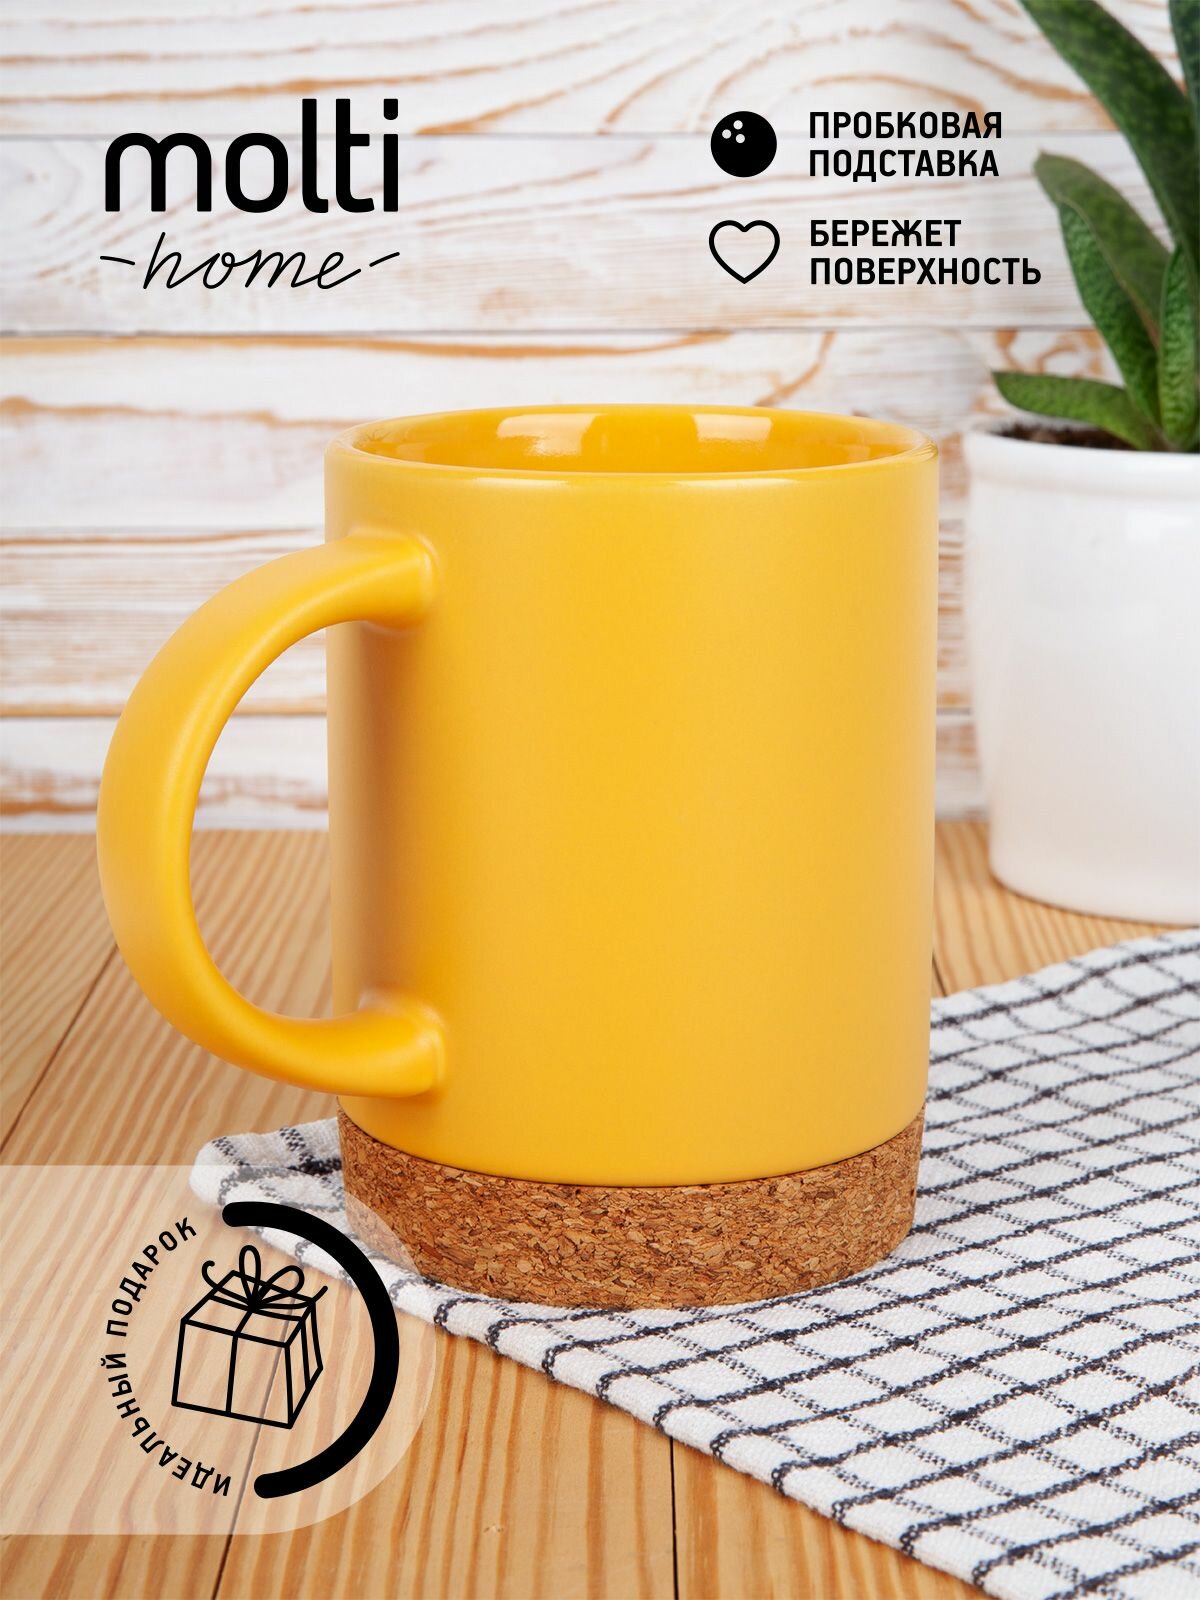 Кружка матовая для чая и кофе molti Corky чашка подарочная с подставкой из пробки 450 мл, желтая